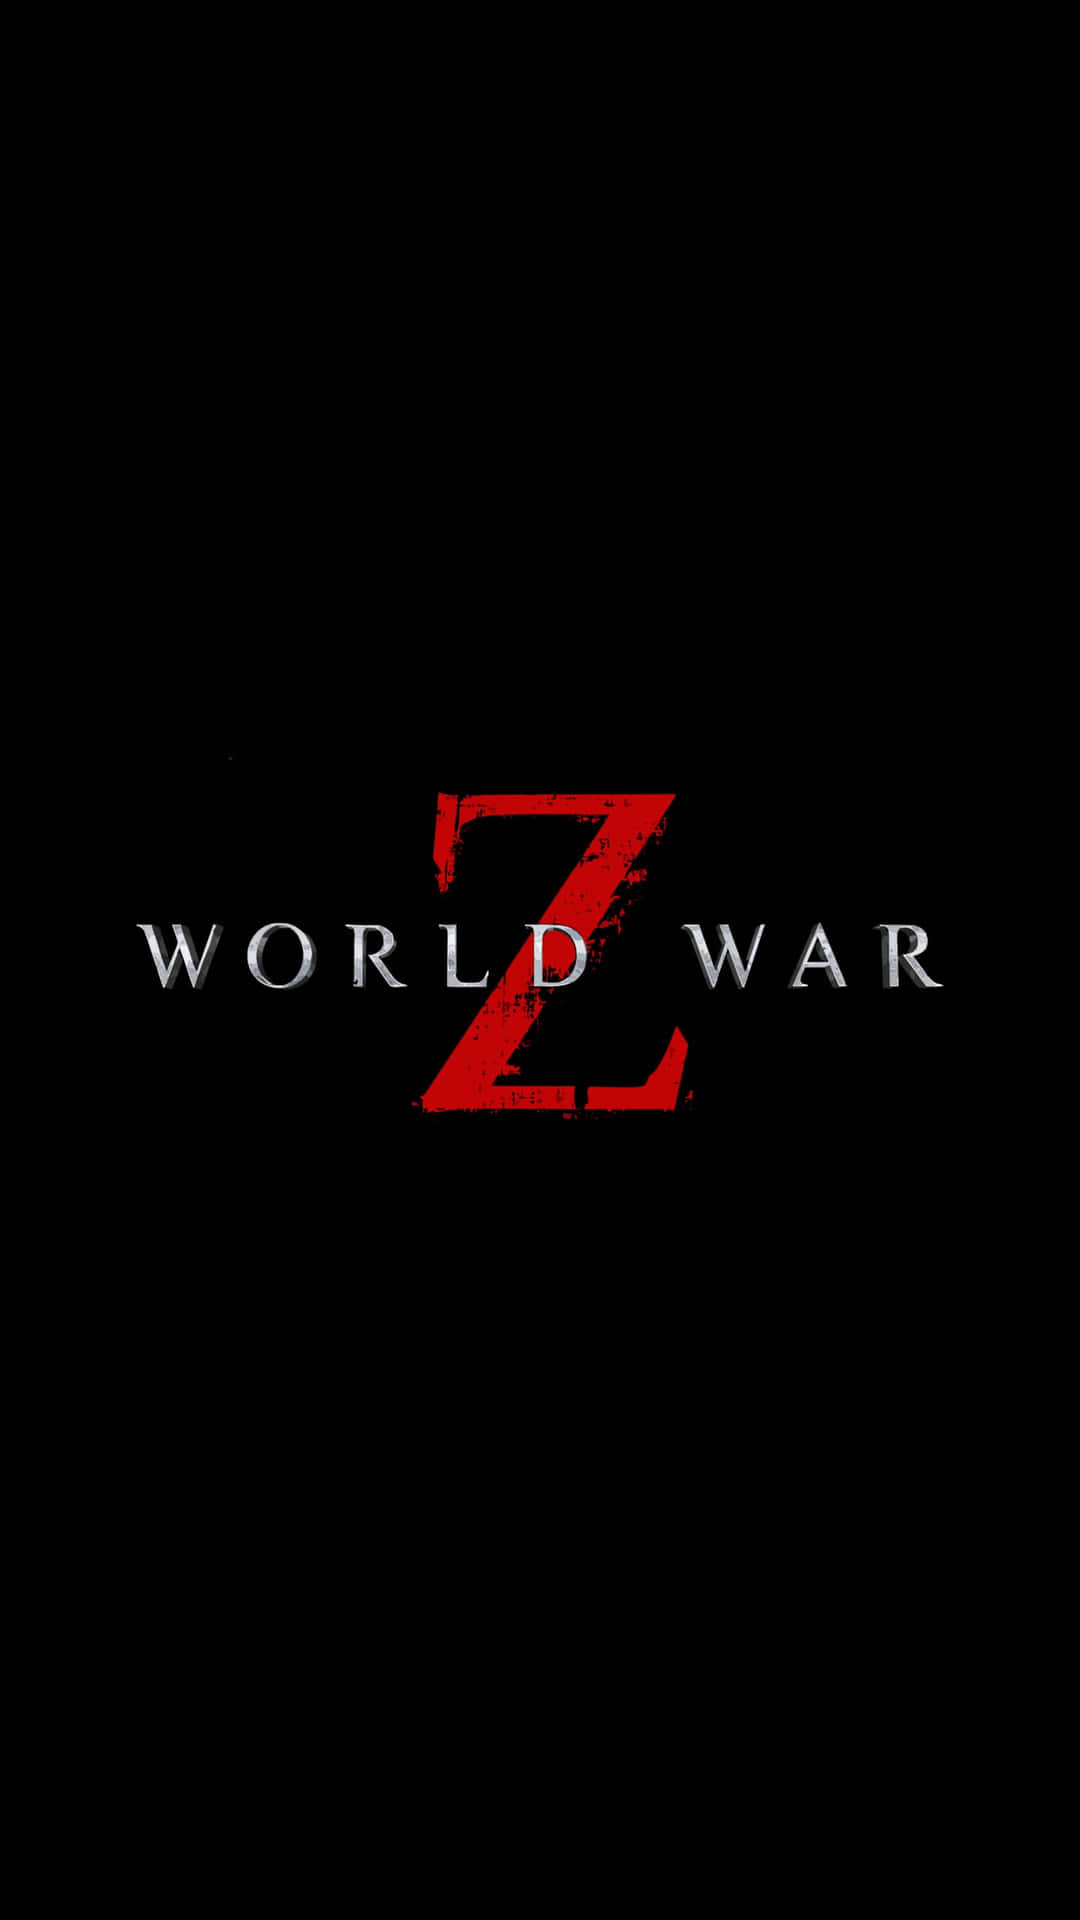 Worldwar Z-logotyp På Svart Bakgrund